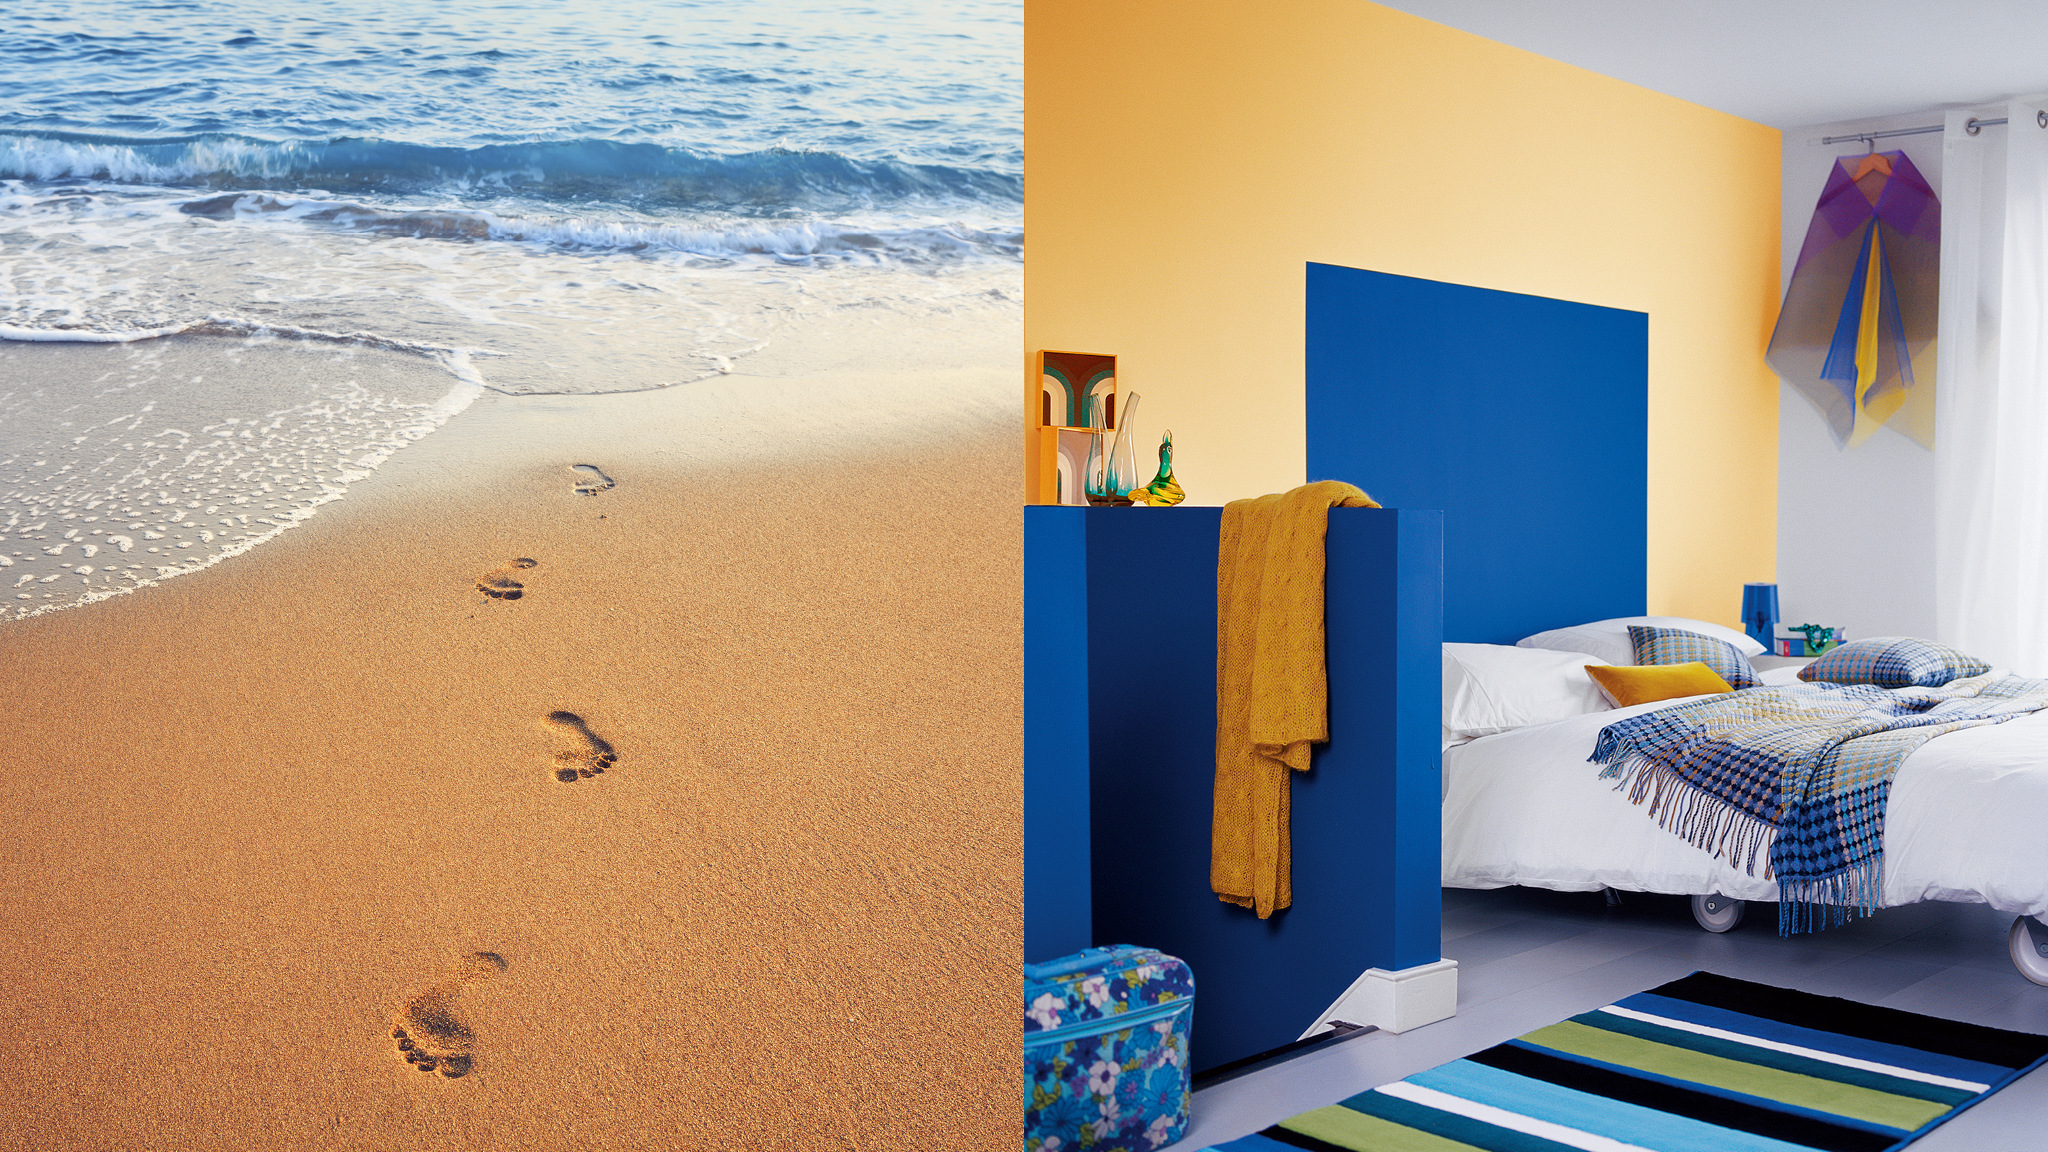 Mang cảm giác kỳ nghỉ vào trong nhà bạn bằng cách sơn tường với những màu sắc vui tươi lấy cảm hứng từ biển.